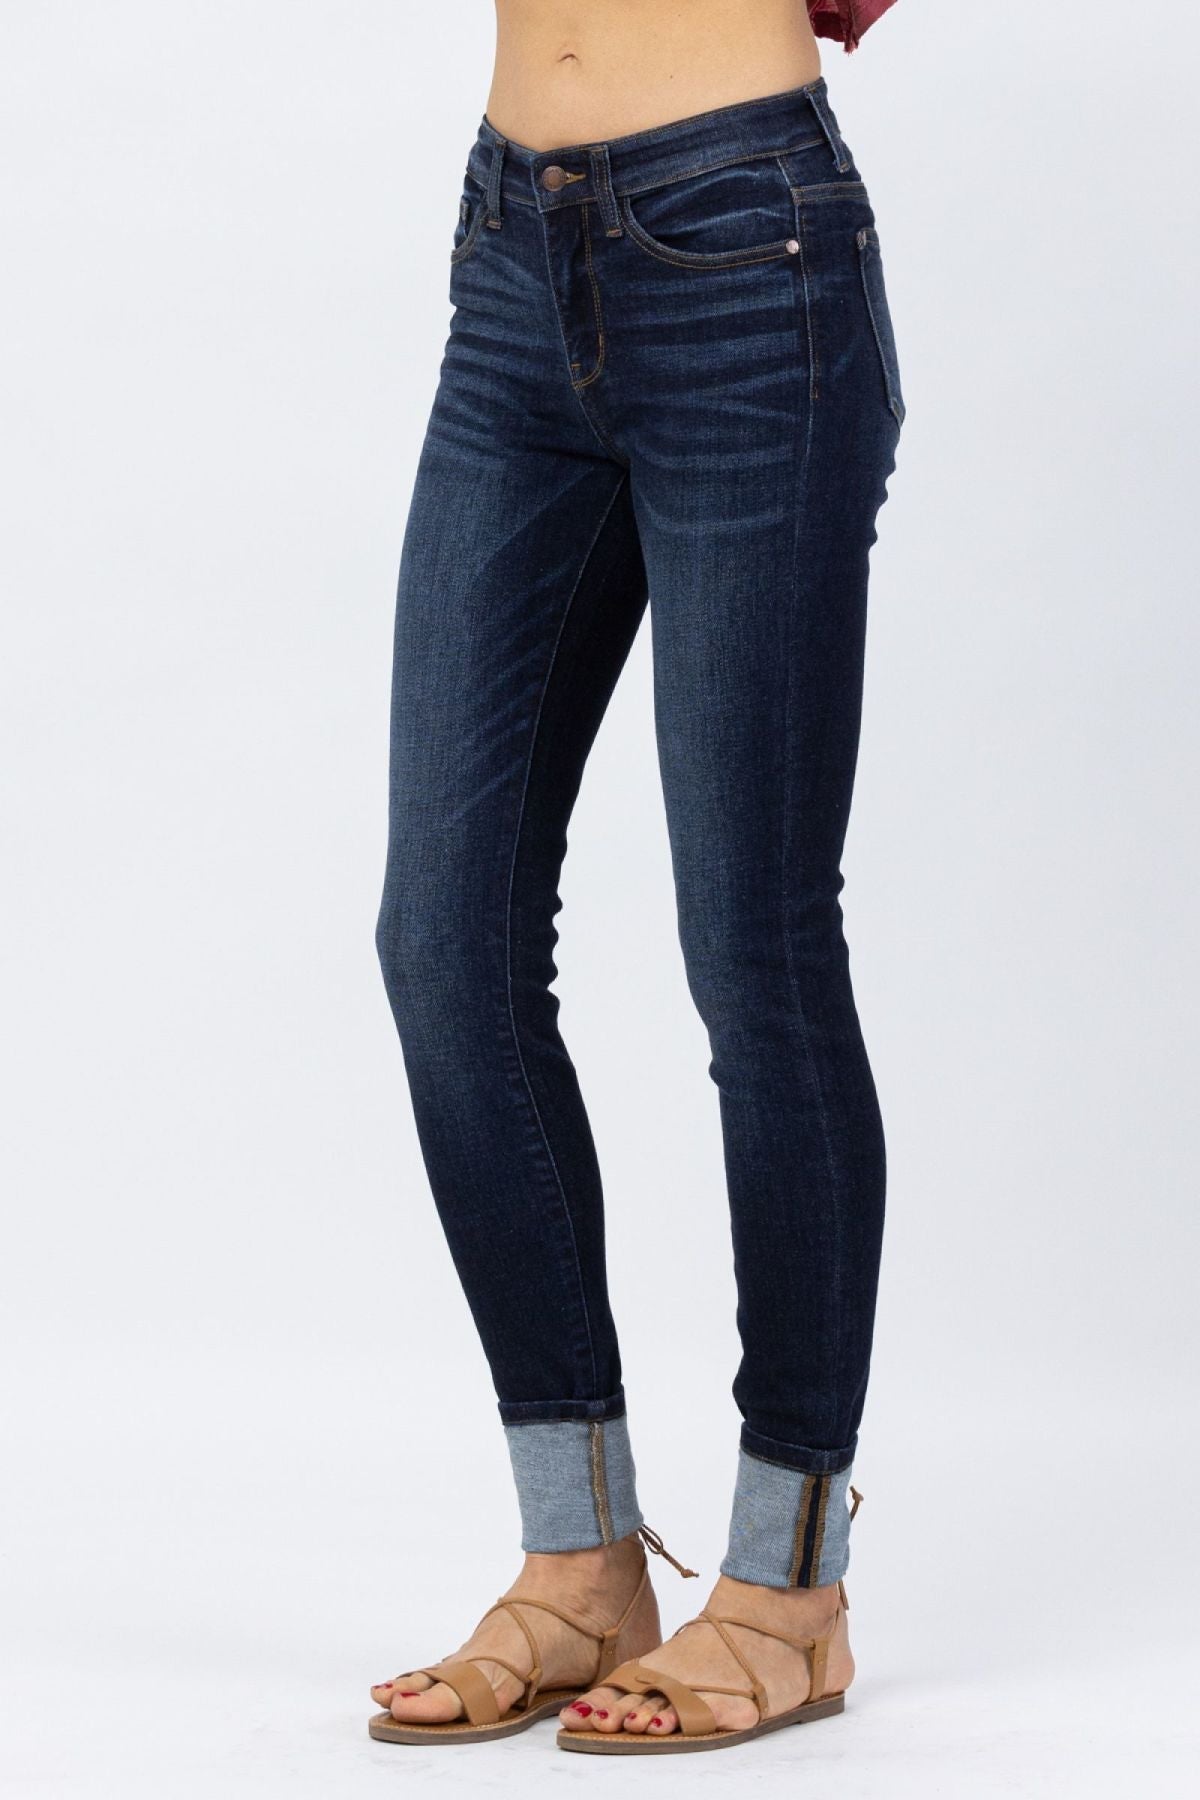 Judy Blue Dark Blue Cuffed Skinny Jeans